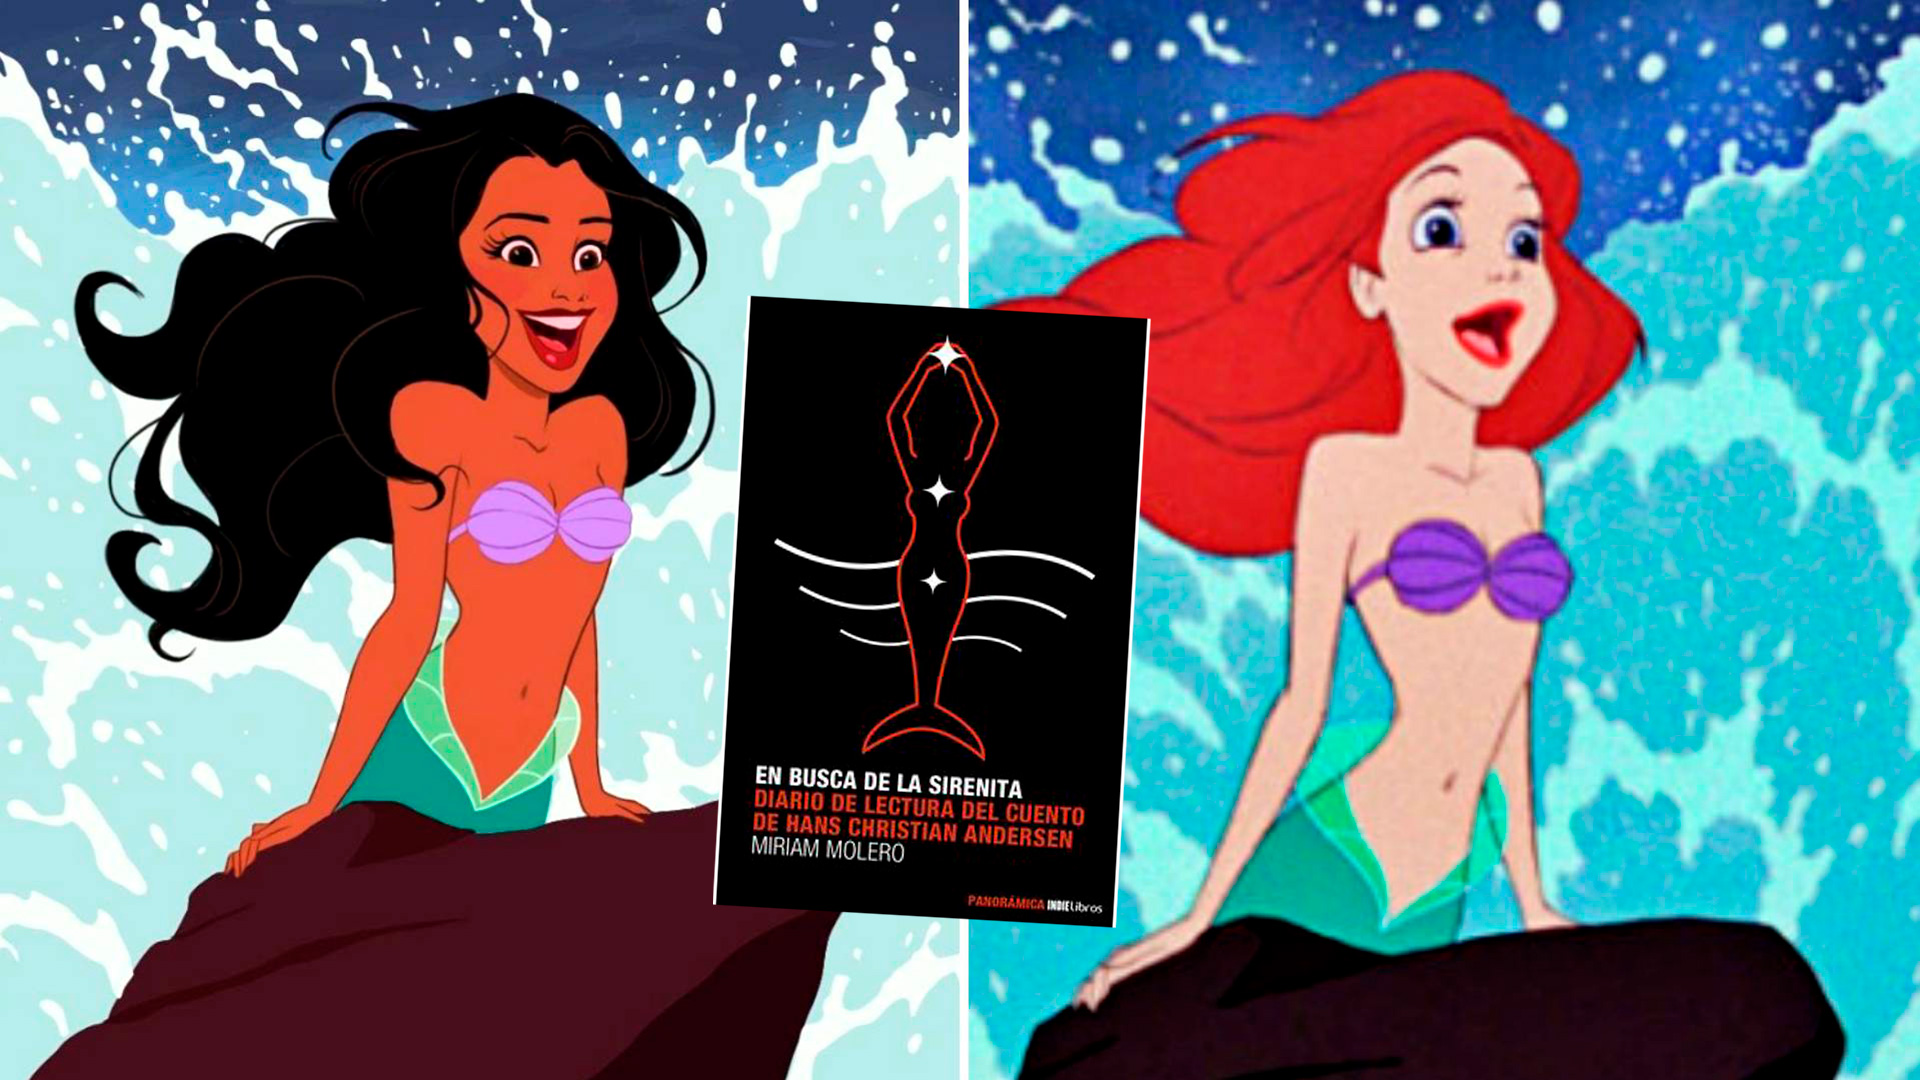 La polémica sobre “La Sirenita” que se adelantó a la de Disney